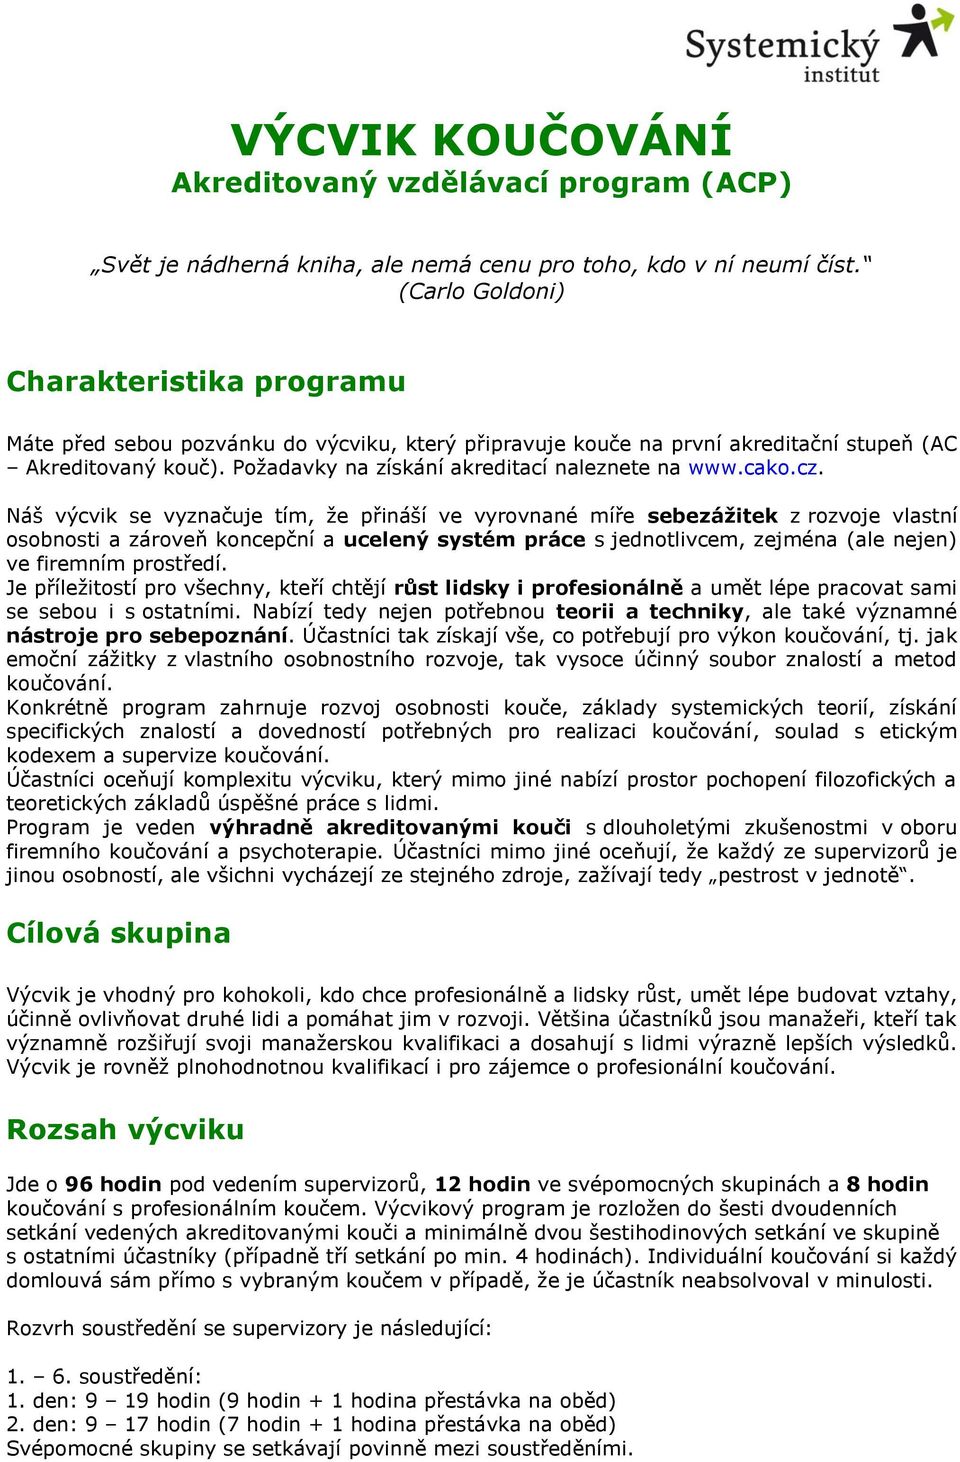 Požadavky na získání akreditací naleznete na www.cako.cz.